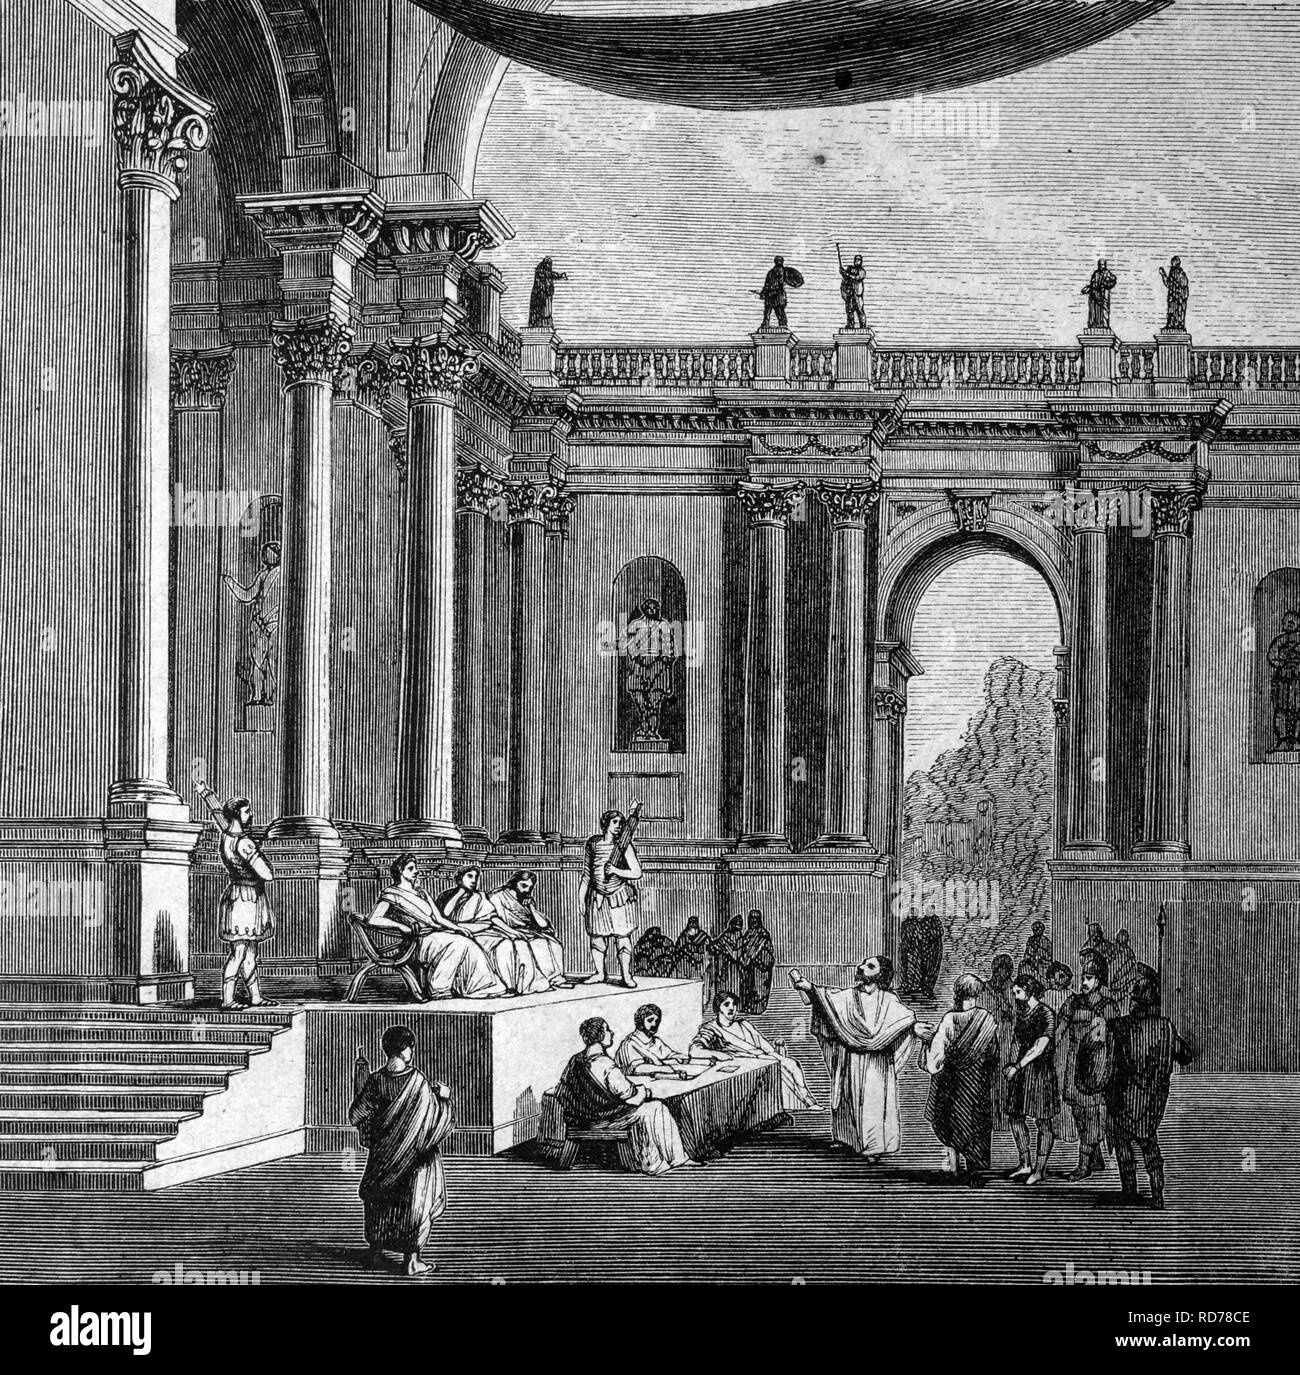 Salle de Justice dans l'ancienne Rome, l'Italie, l'illustration historique, vers 1886 Banque D'Images